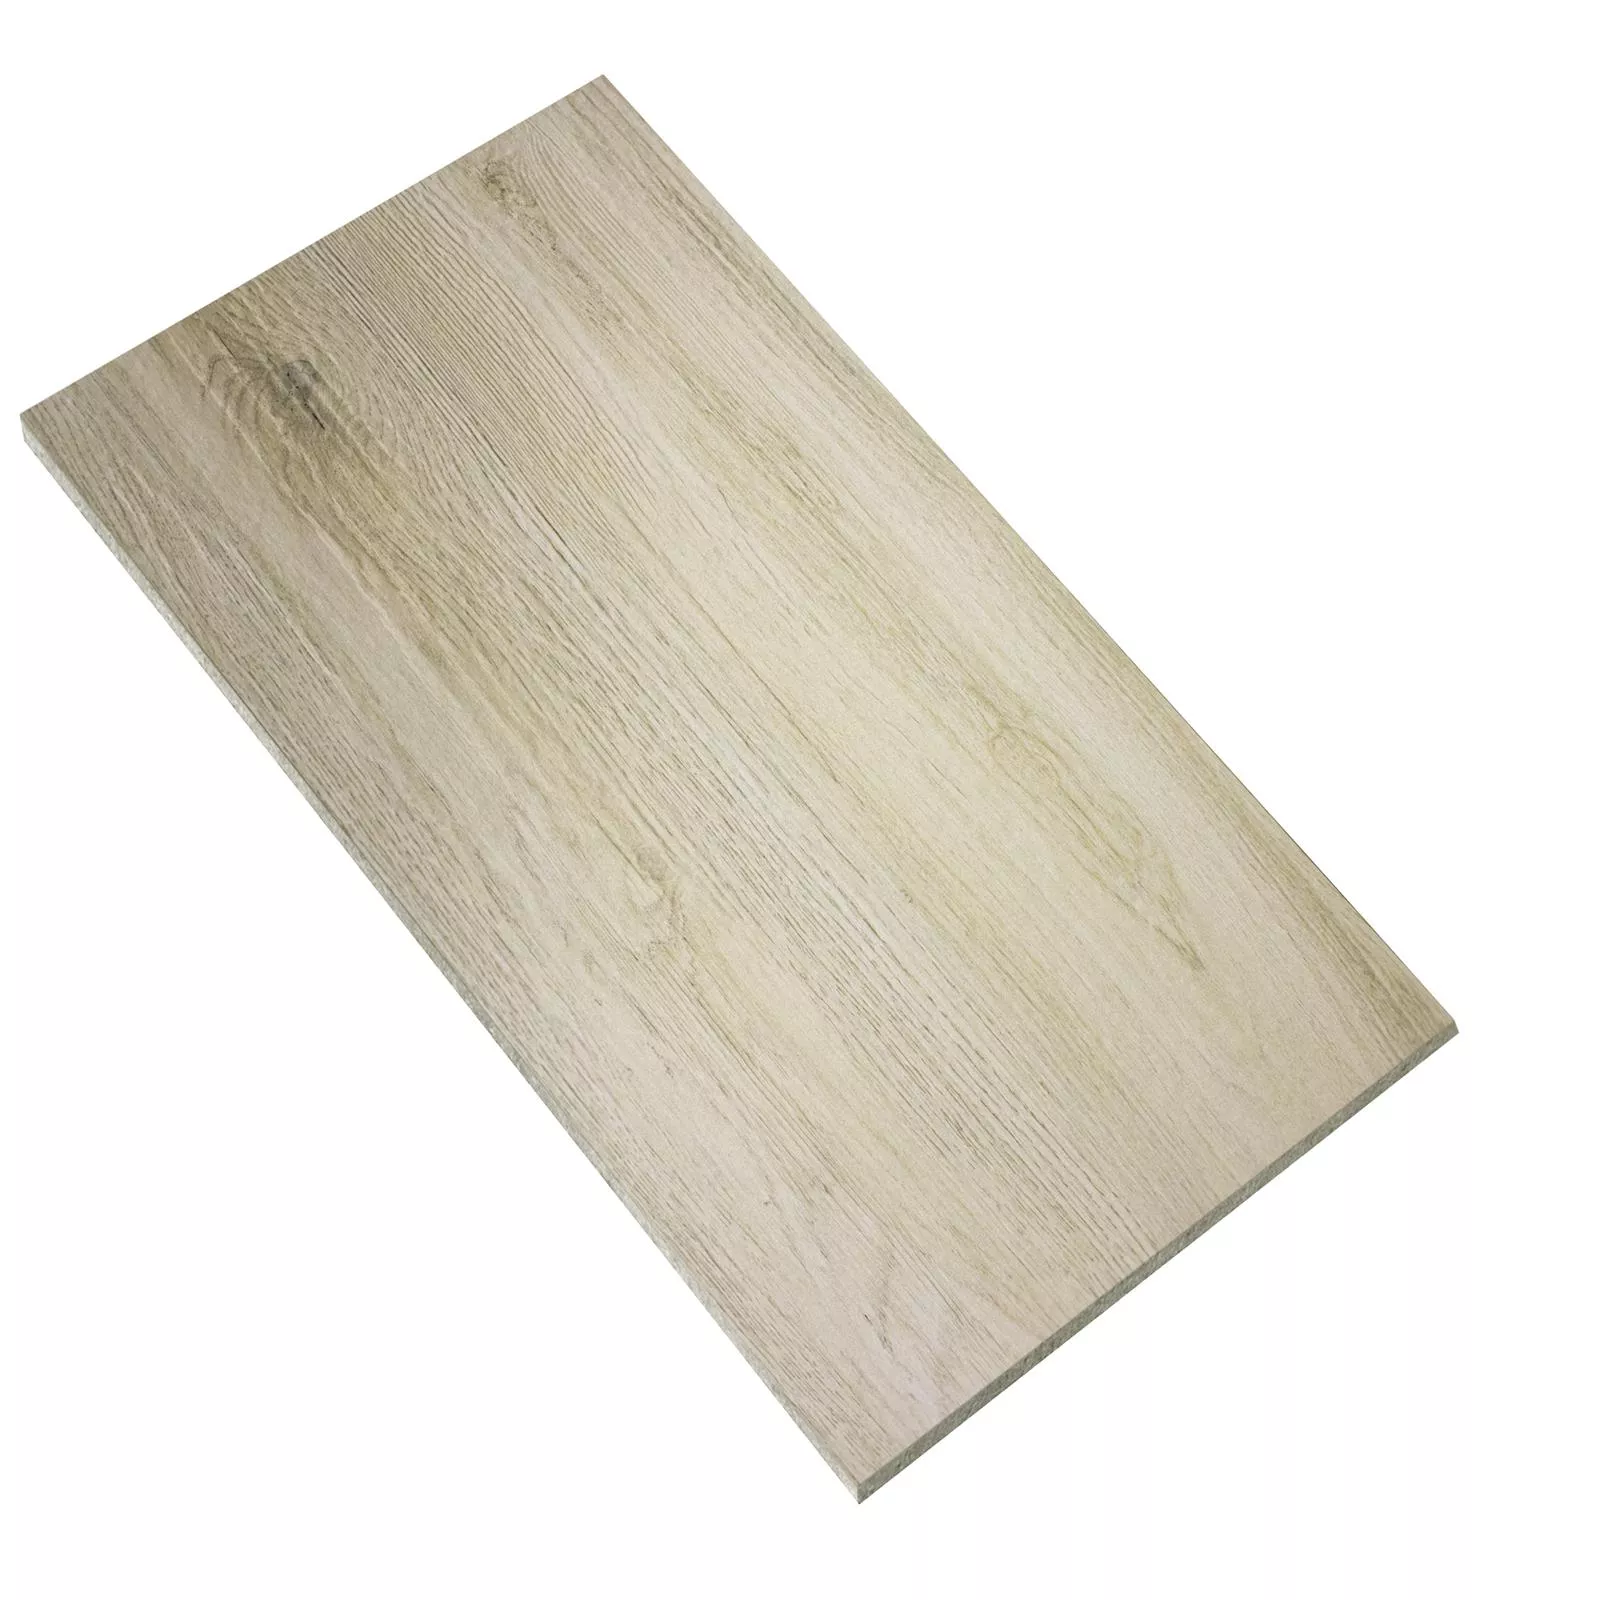 Sample Floor Tiles Wood Optic Alexandria Beige 30x60cm